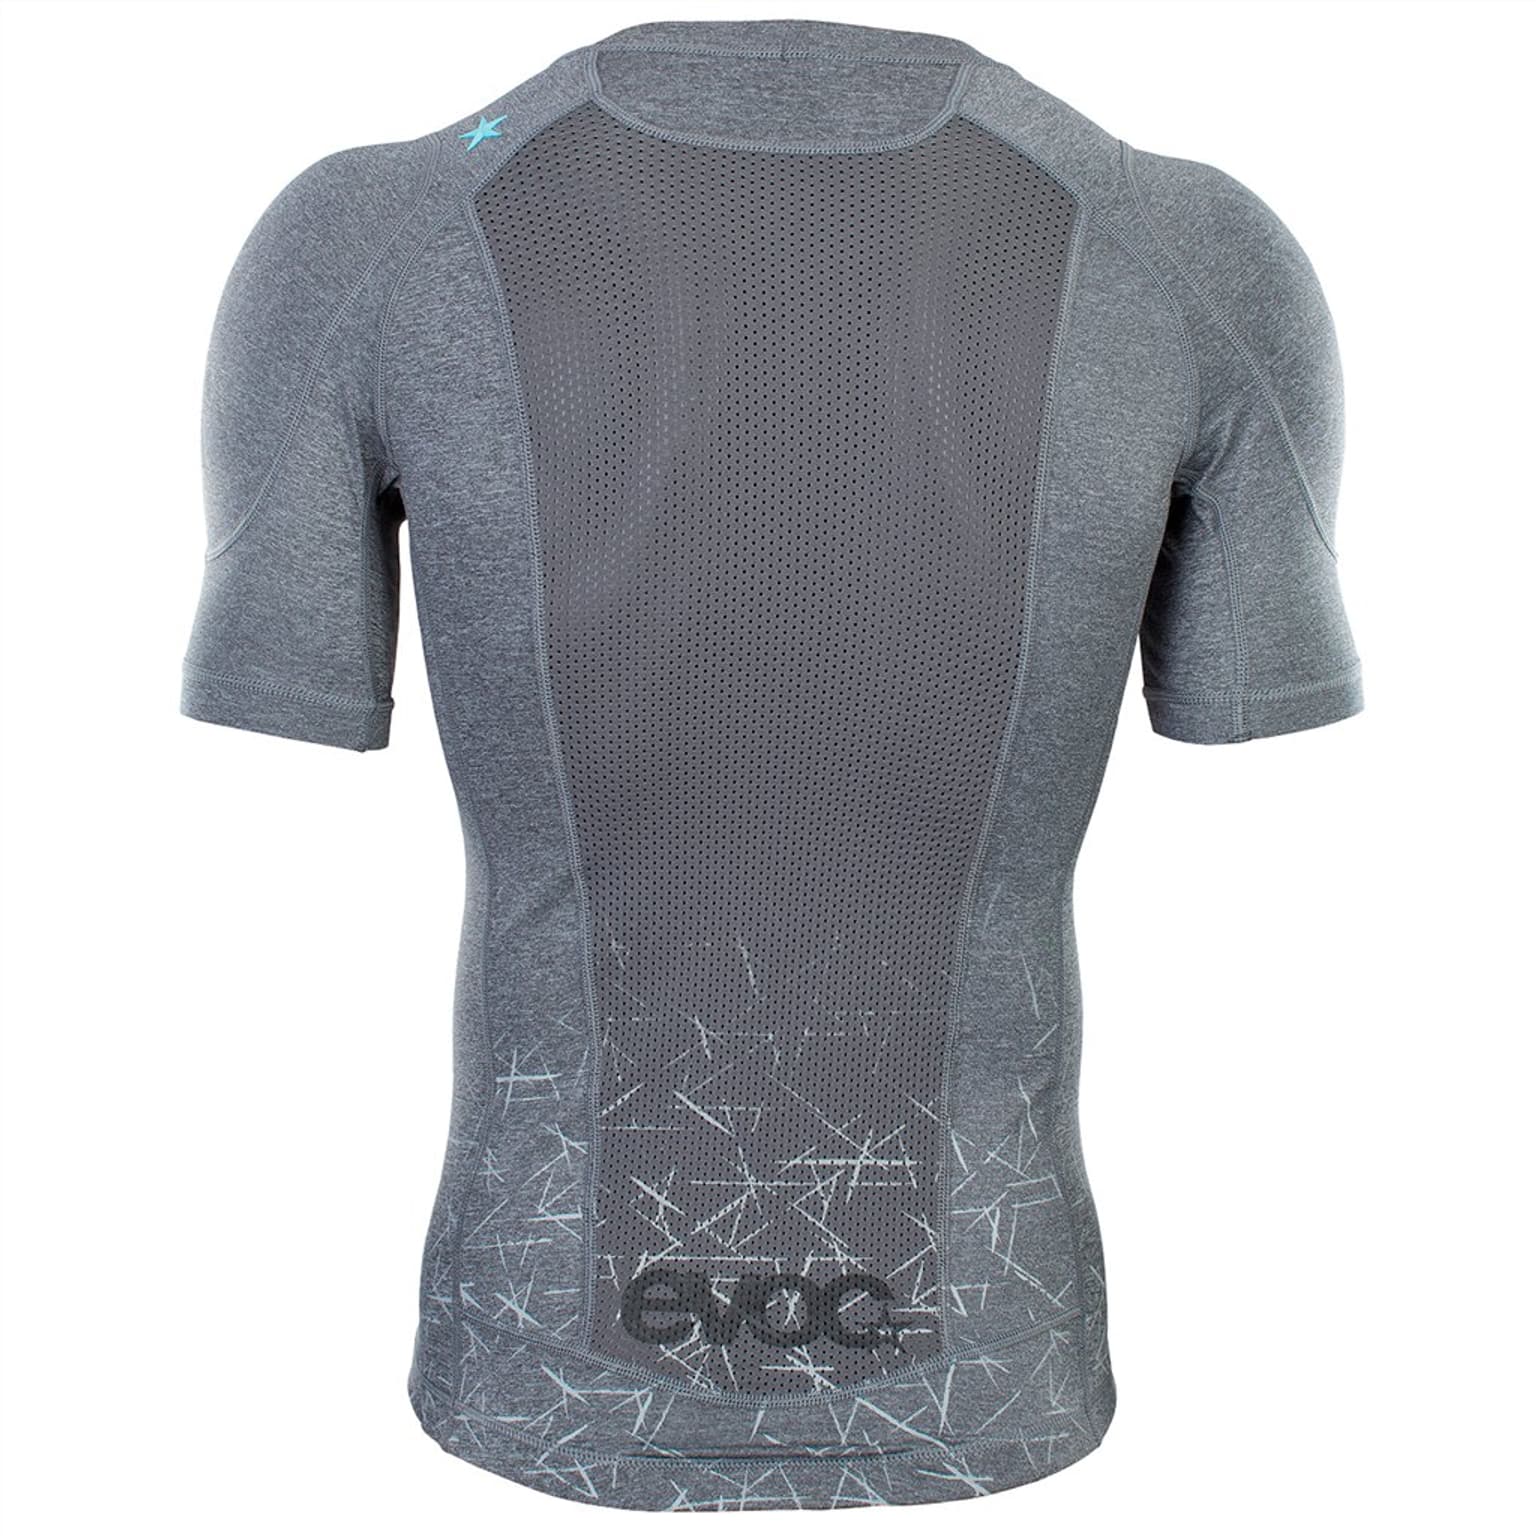 Evoc Evoc Enduro Shirt Protections gris 4